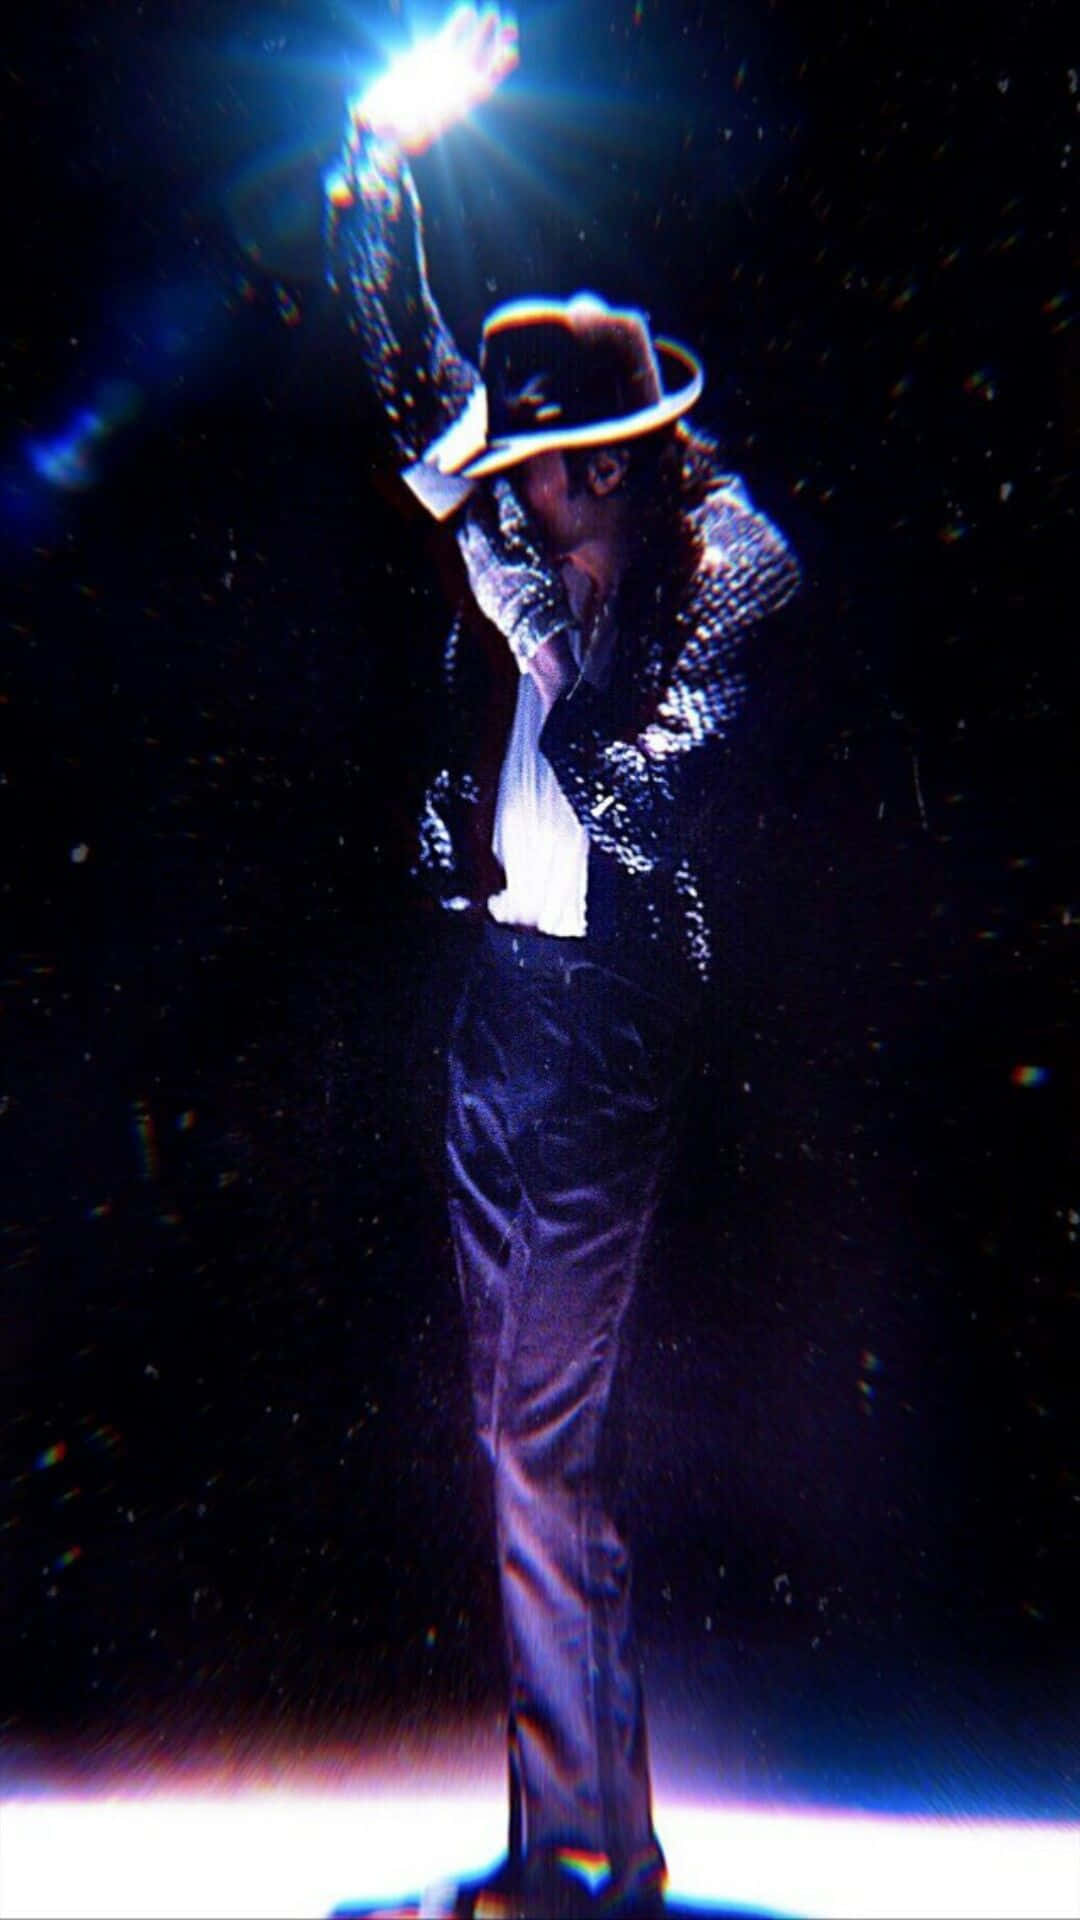 Feiernsie Den King Of Pop Michael Jackson Auf Ihrem Iphone! Wallpaper